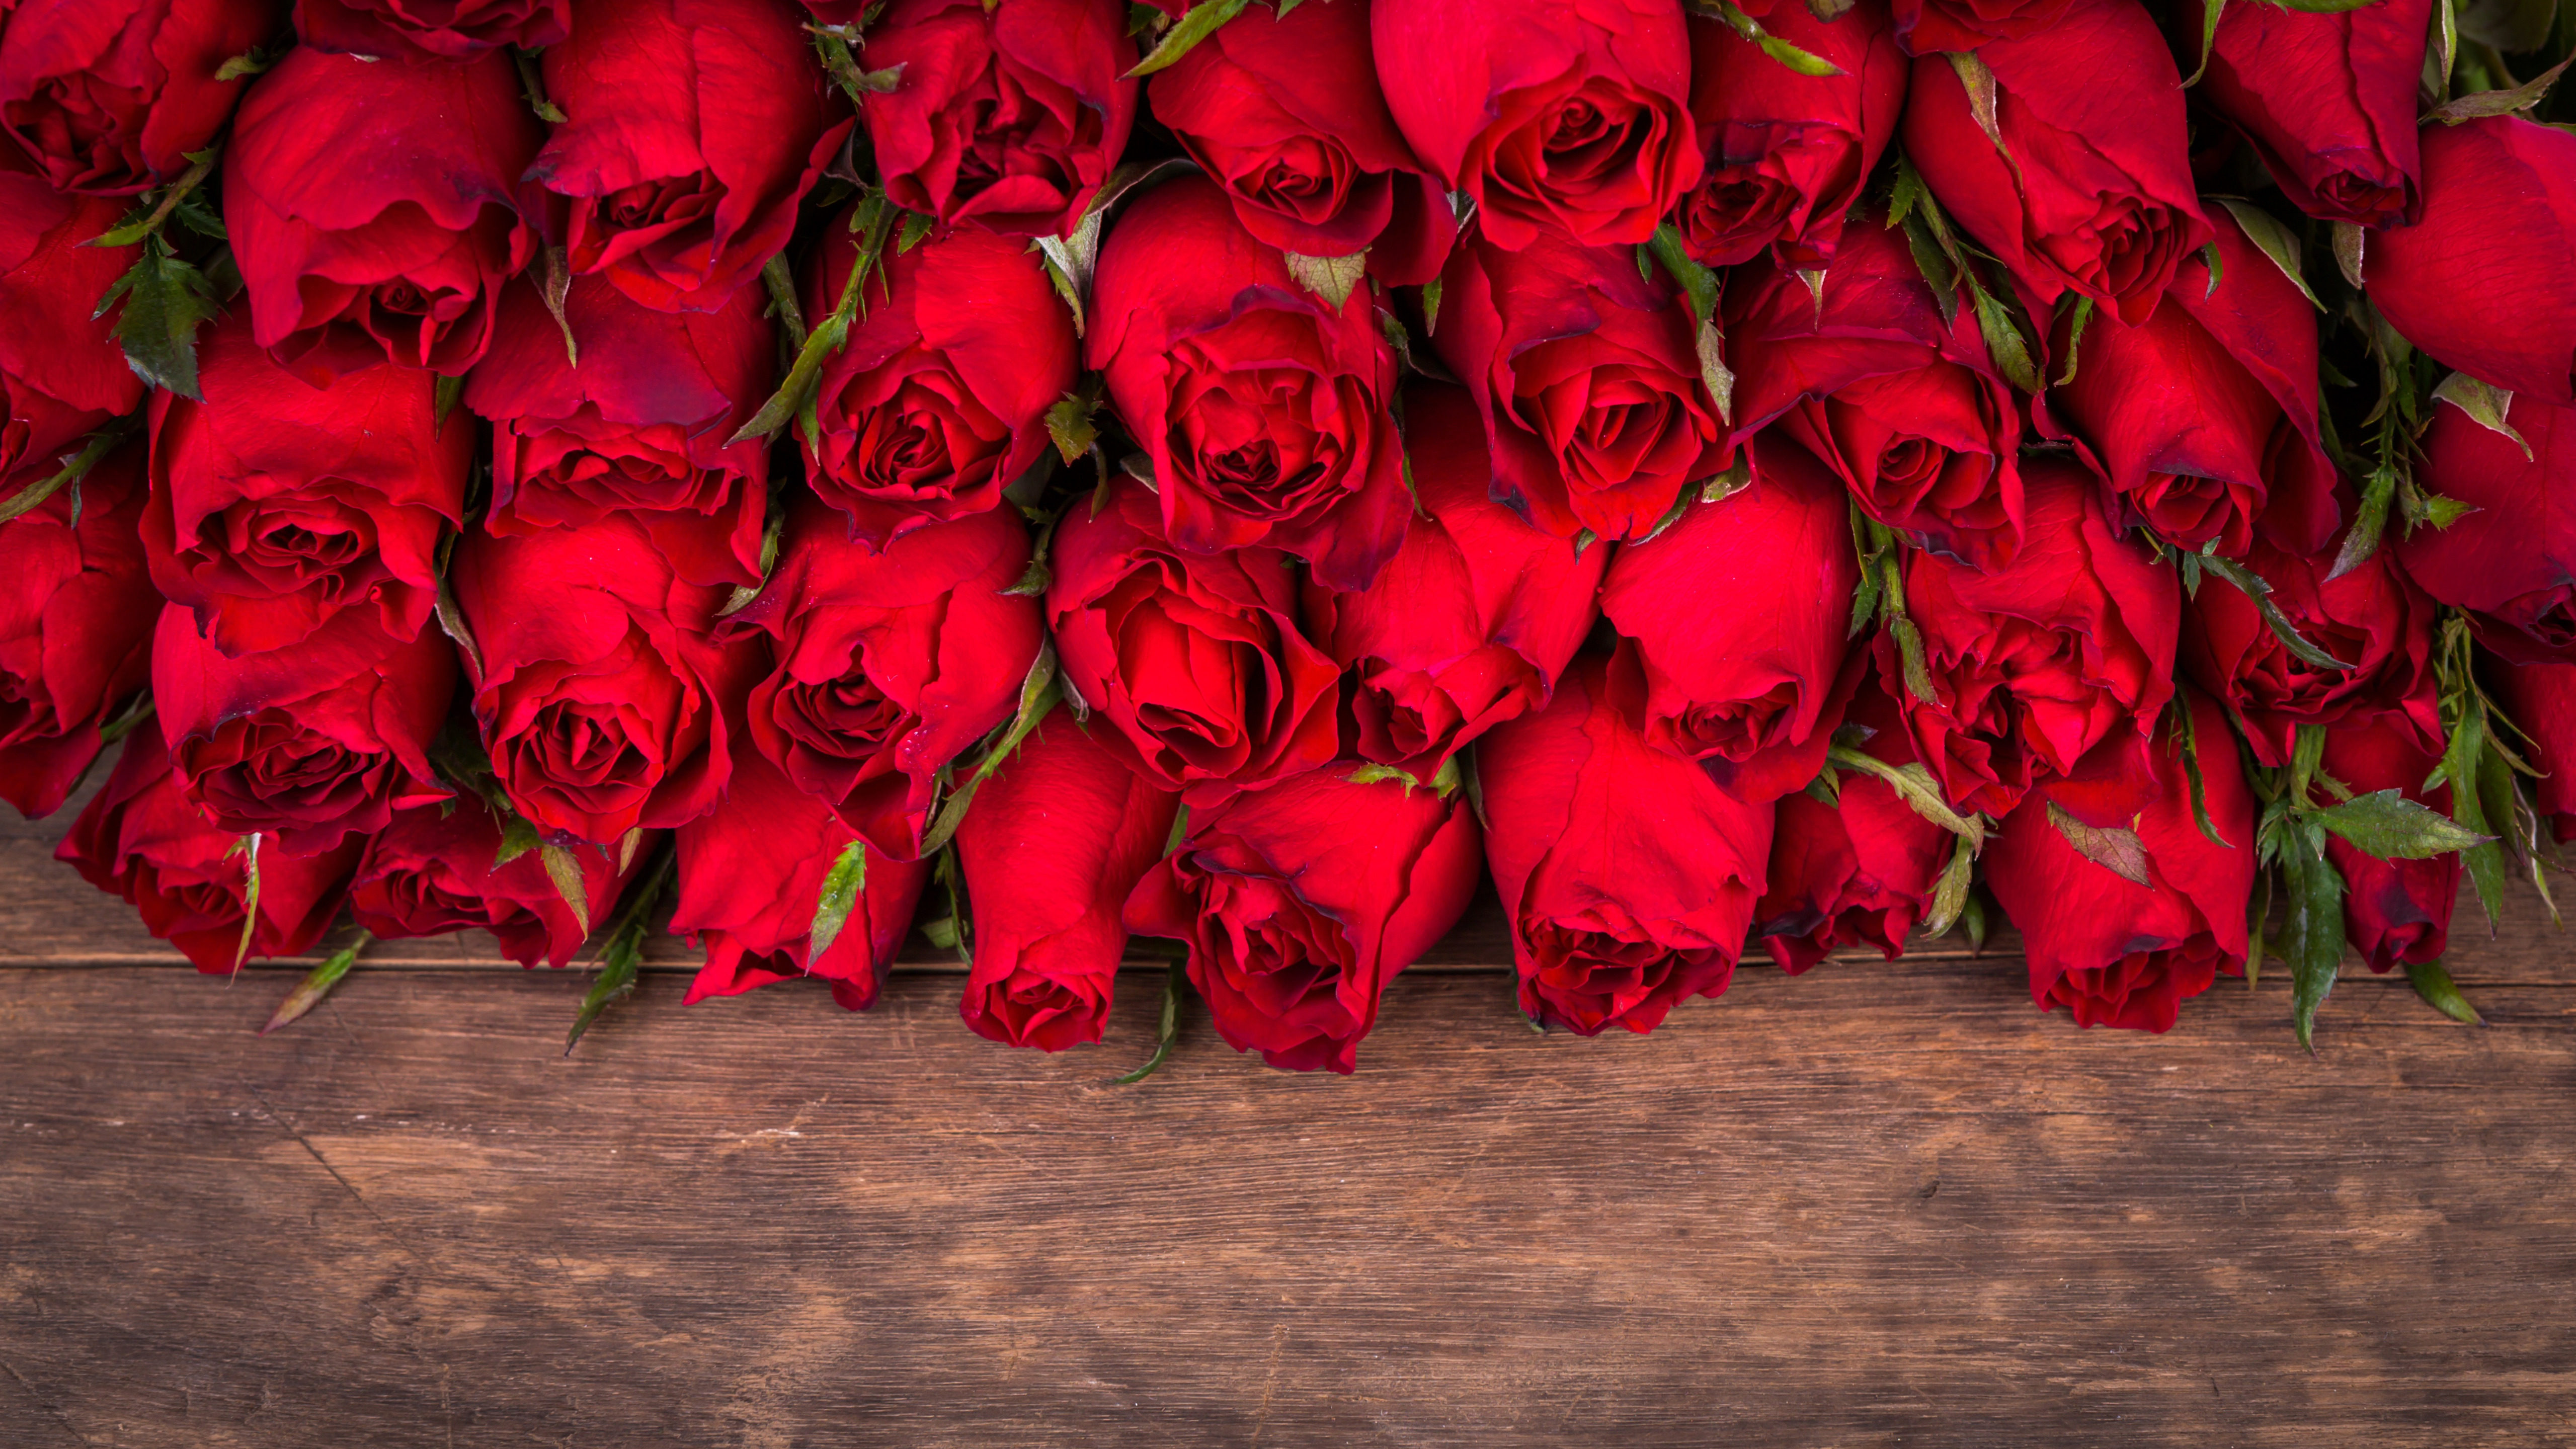 Юбилеи день рождения видео. Поздравления с днём рождения розы. Открытки с днём рождения женщине. С днем рождения женщине открытка розы. Открытки с днём рождения женщине красные розы.